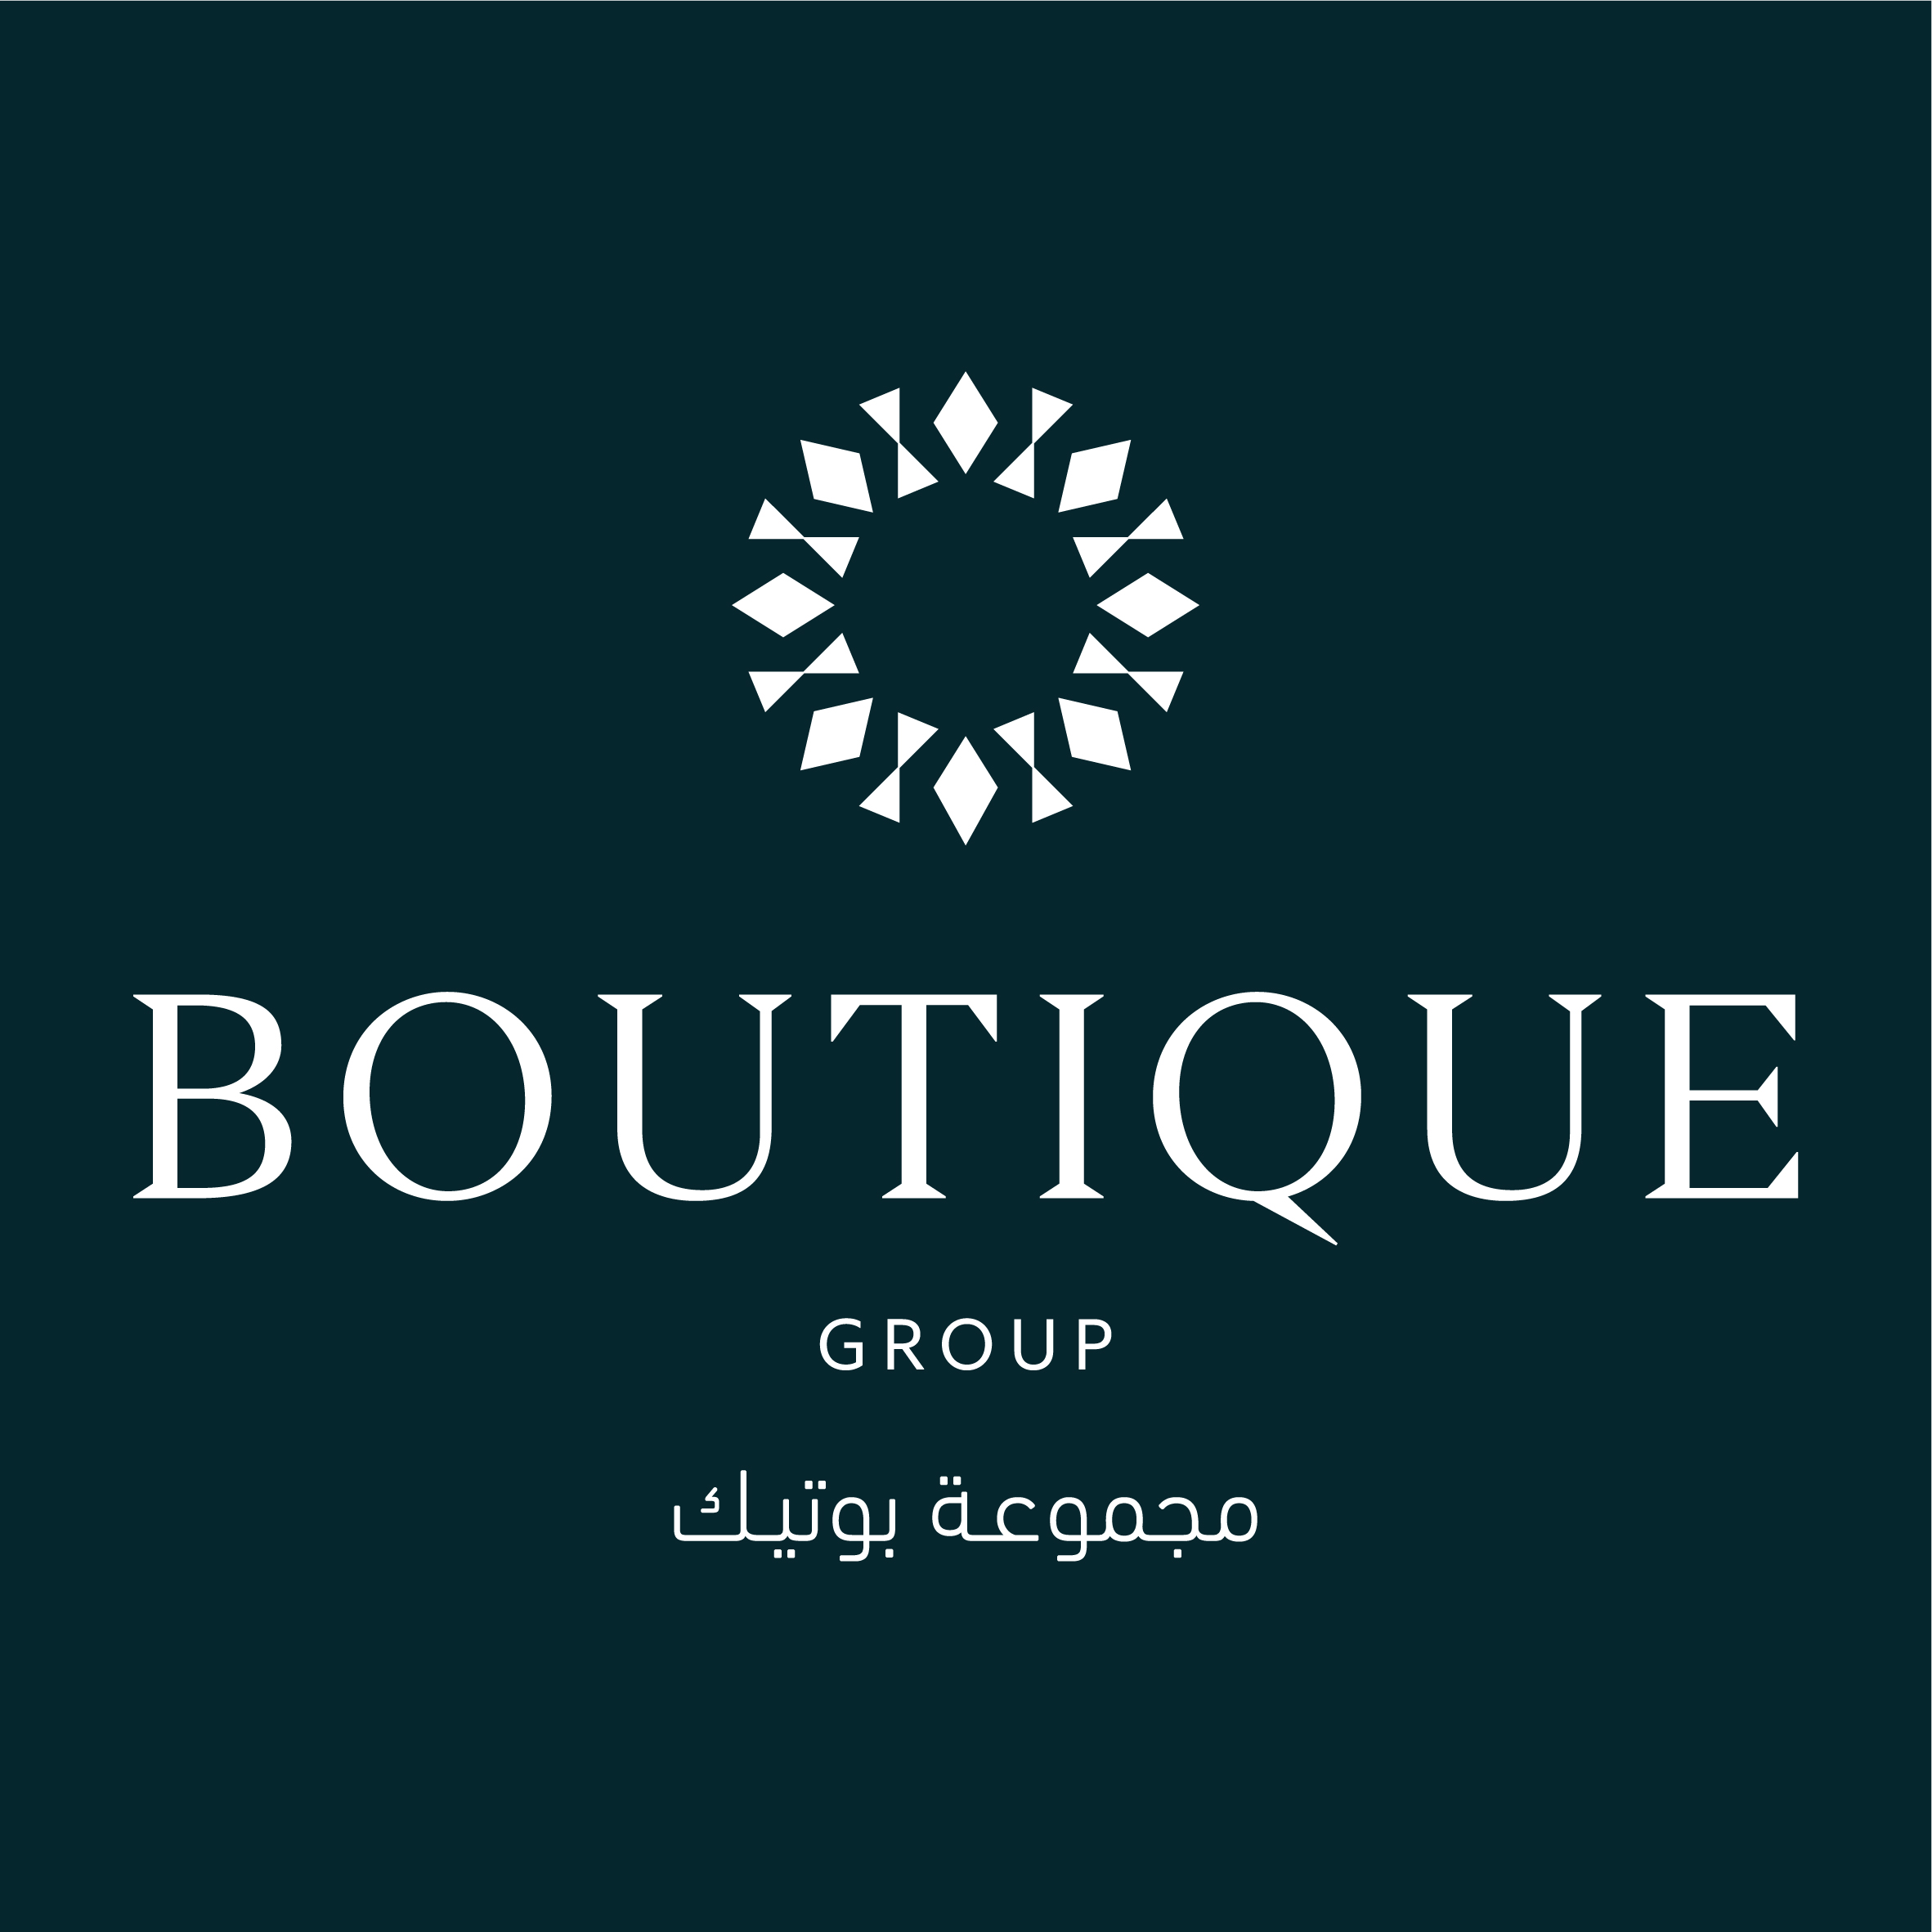 Boutique Group 